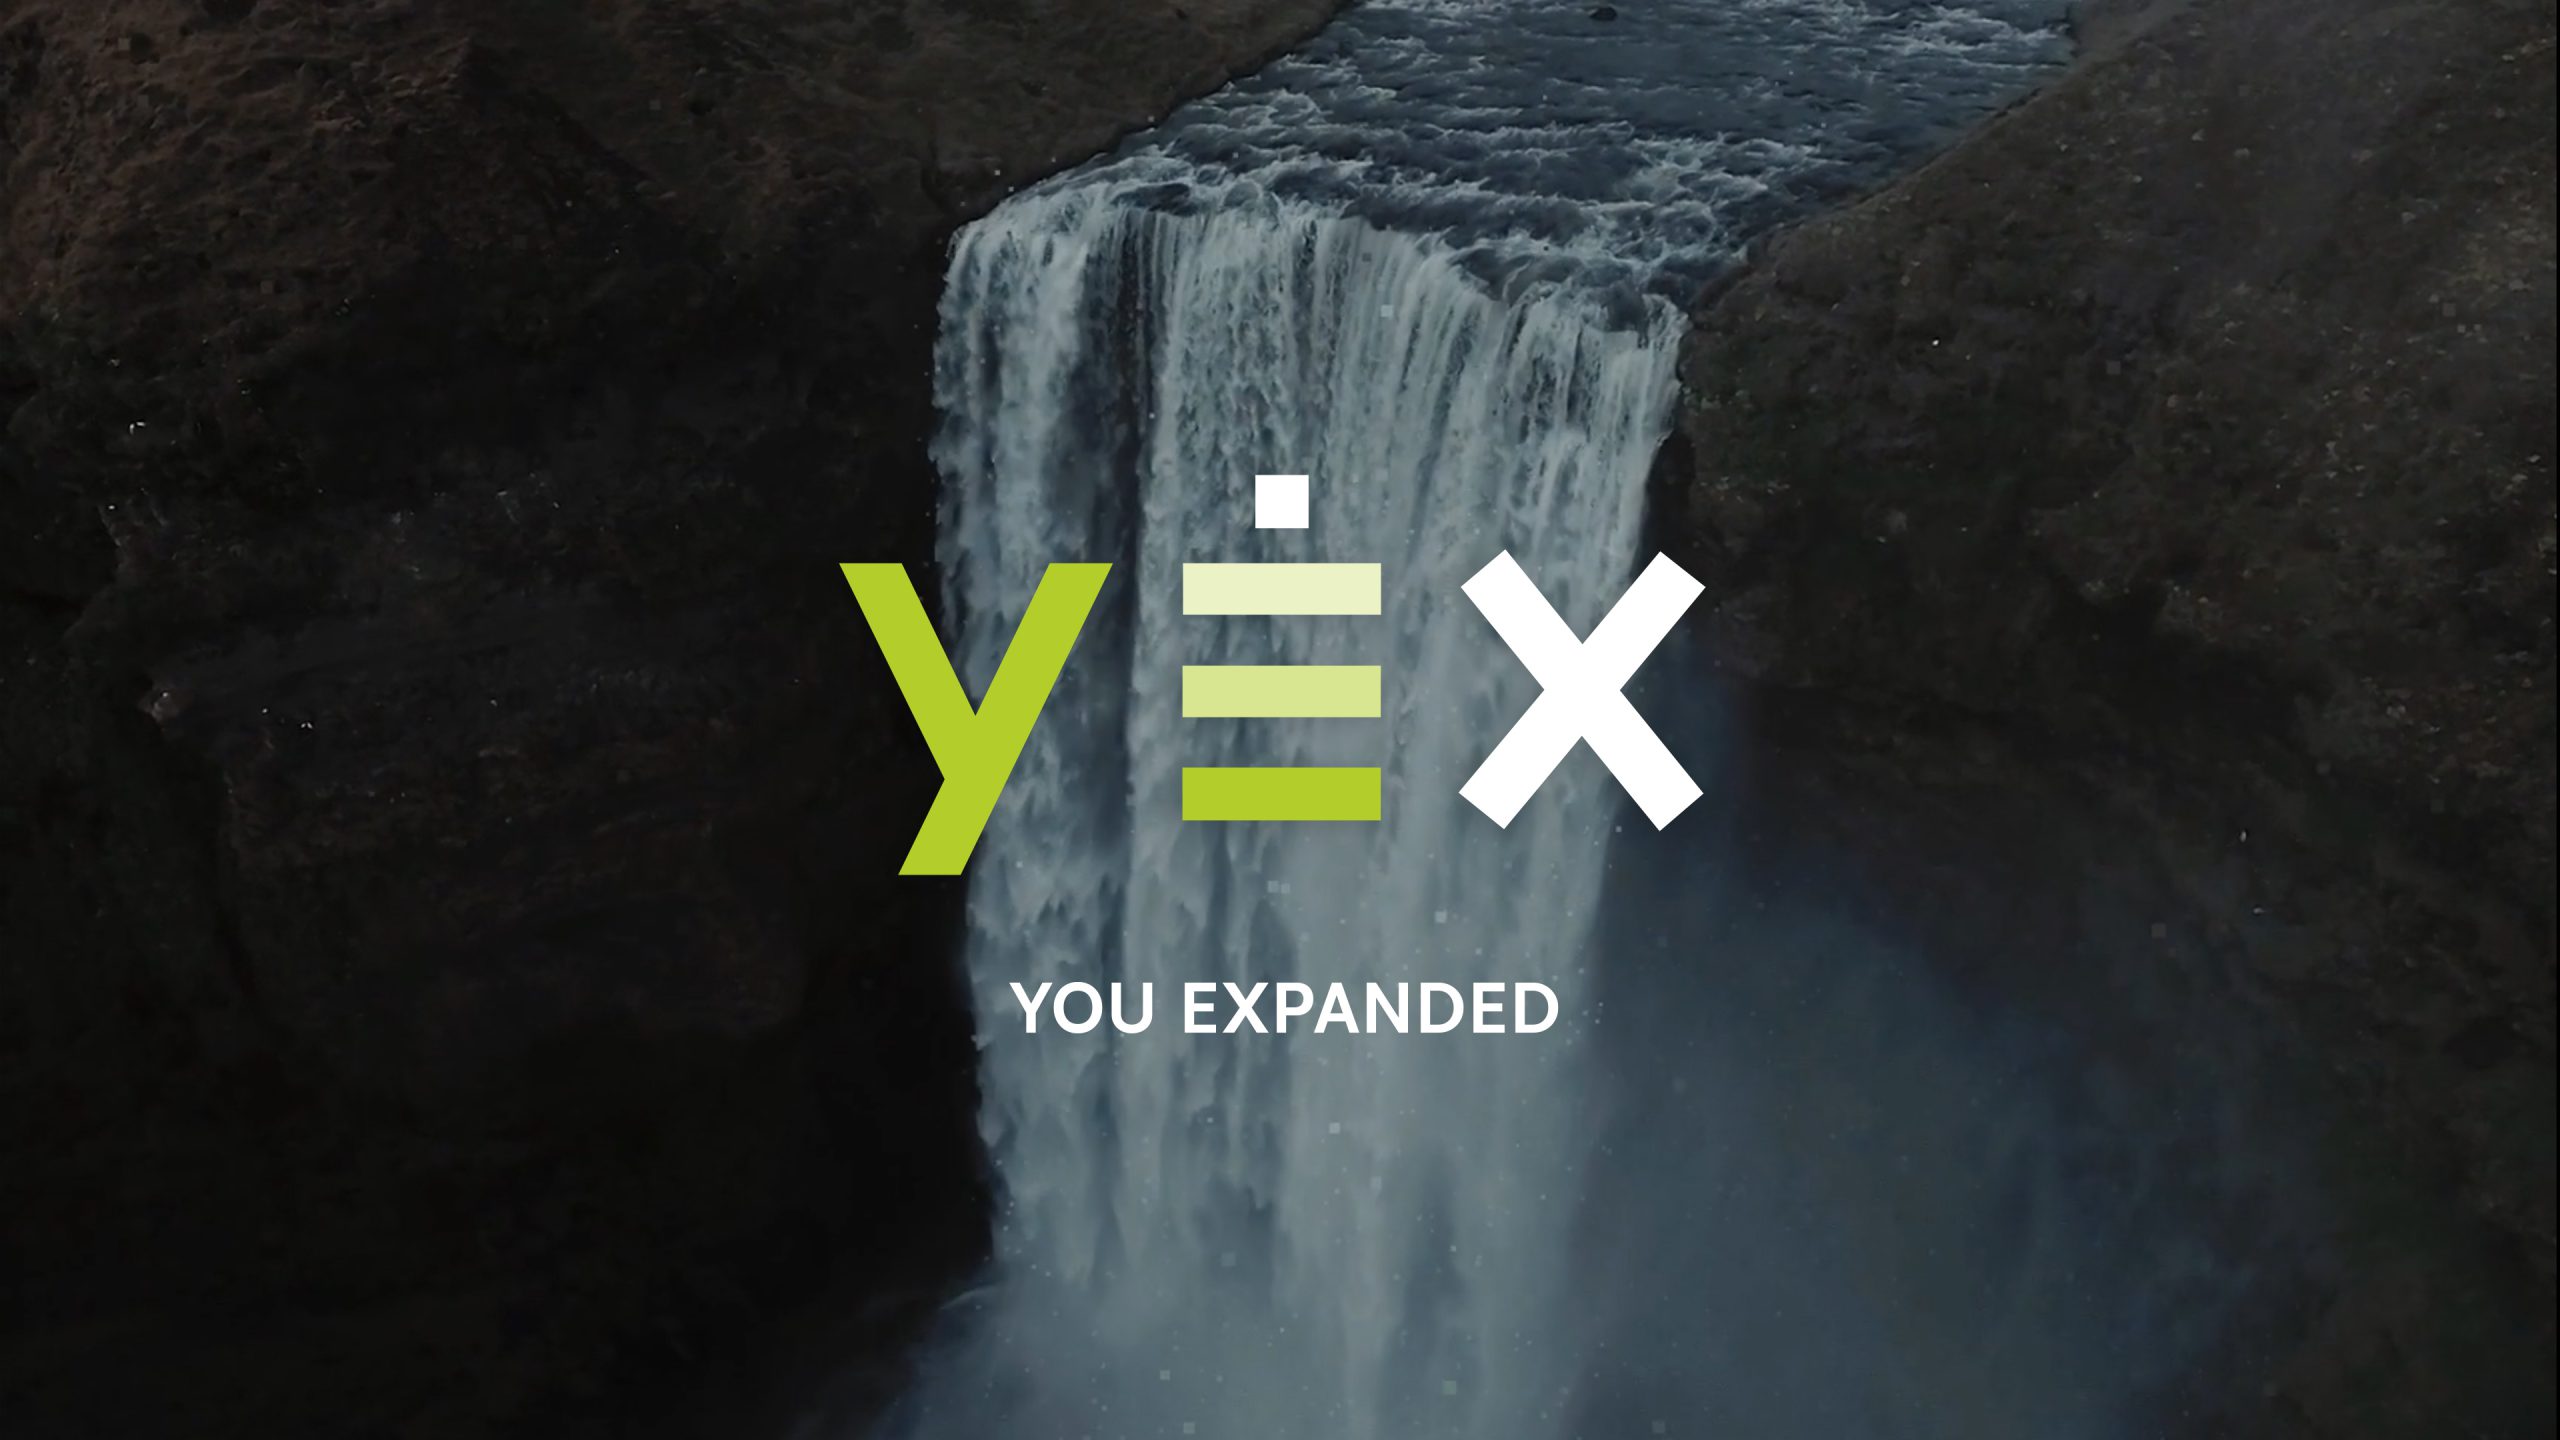 YEX Cover image 02